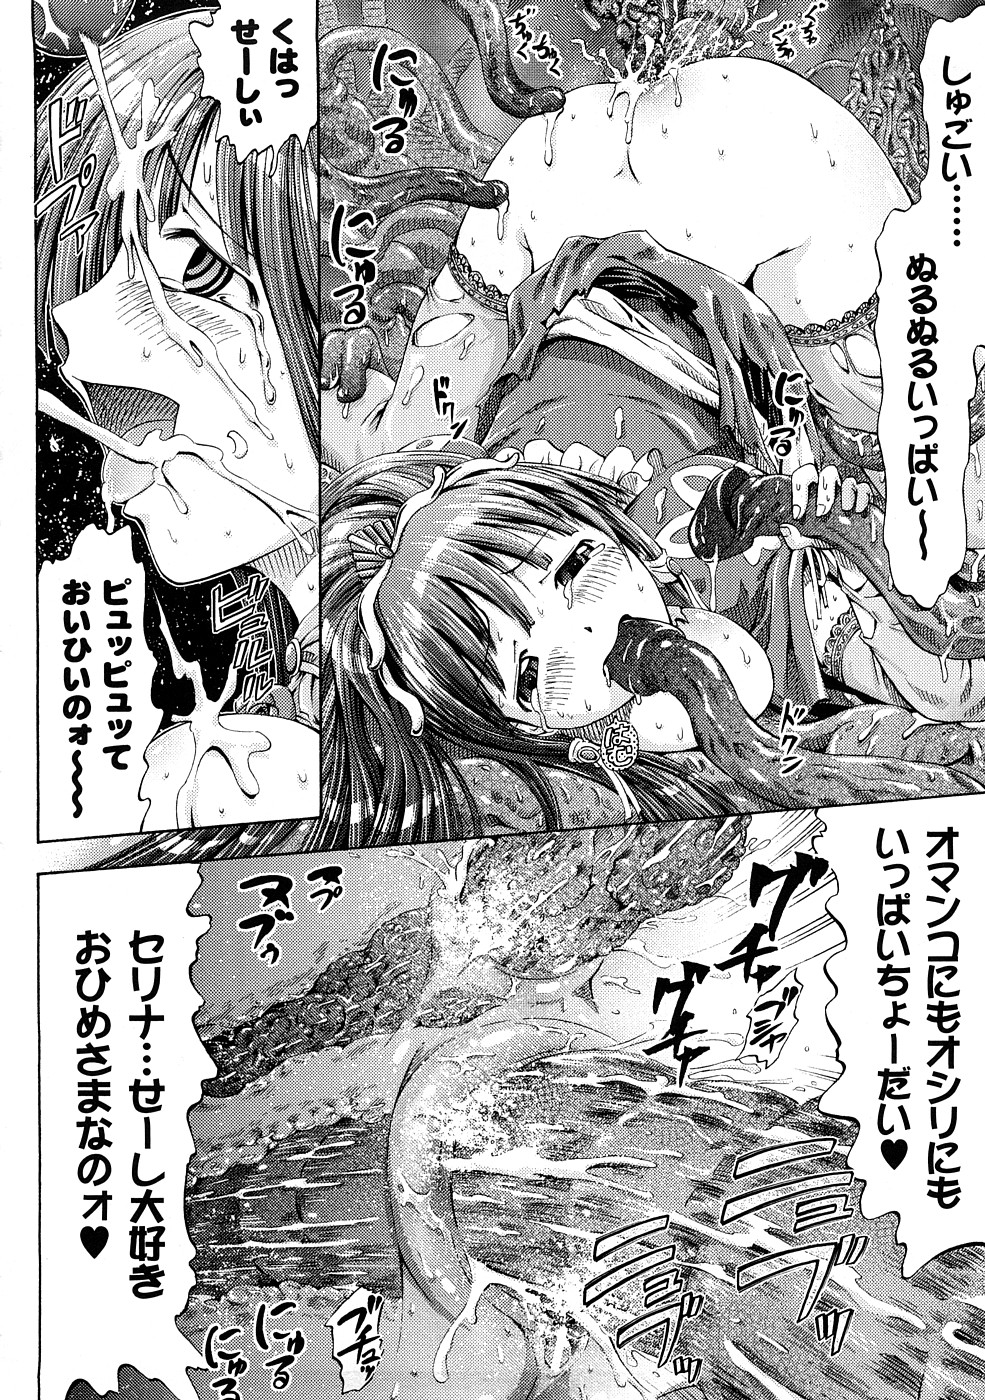 [Horitomo] Fairy Tales page 19 full